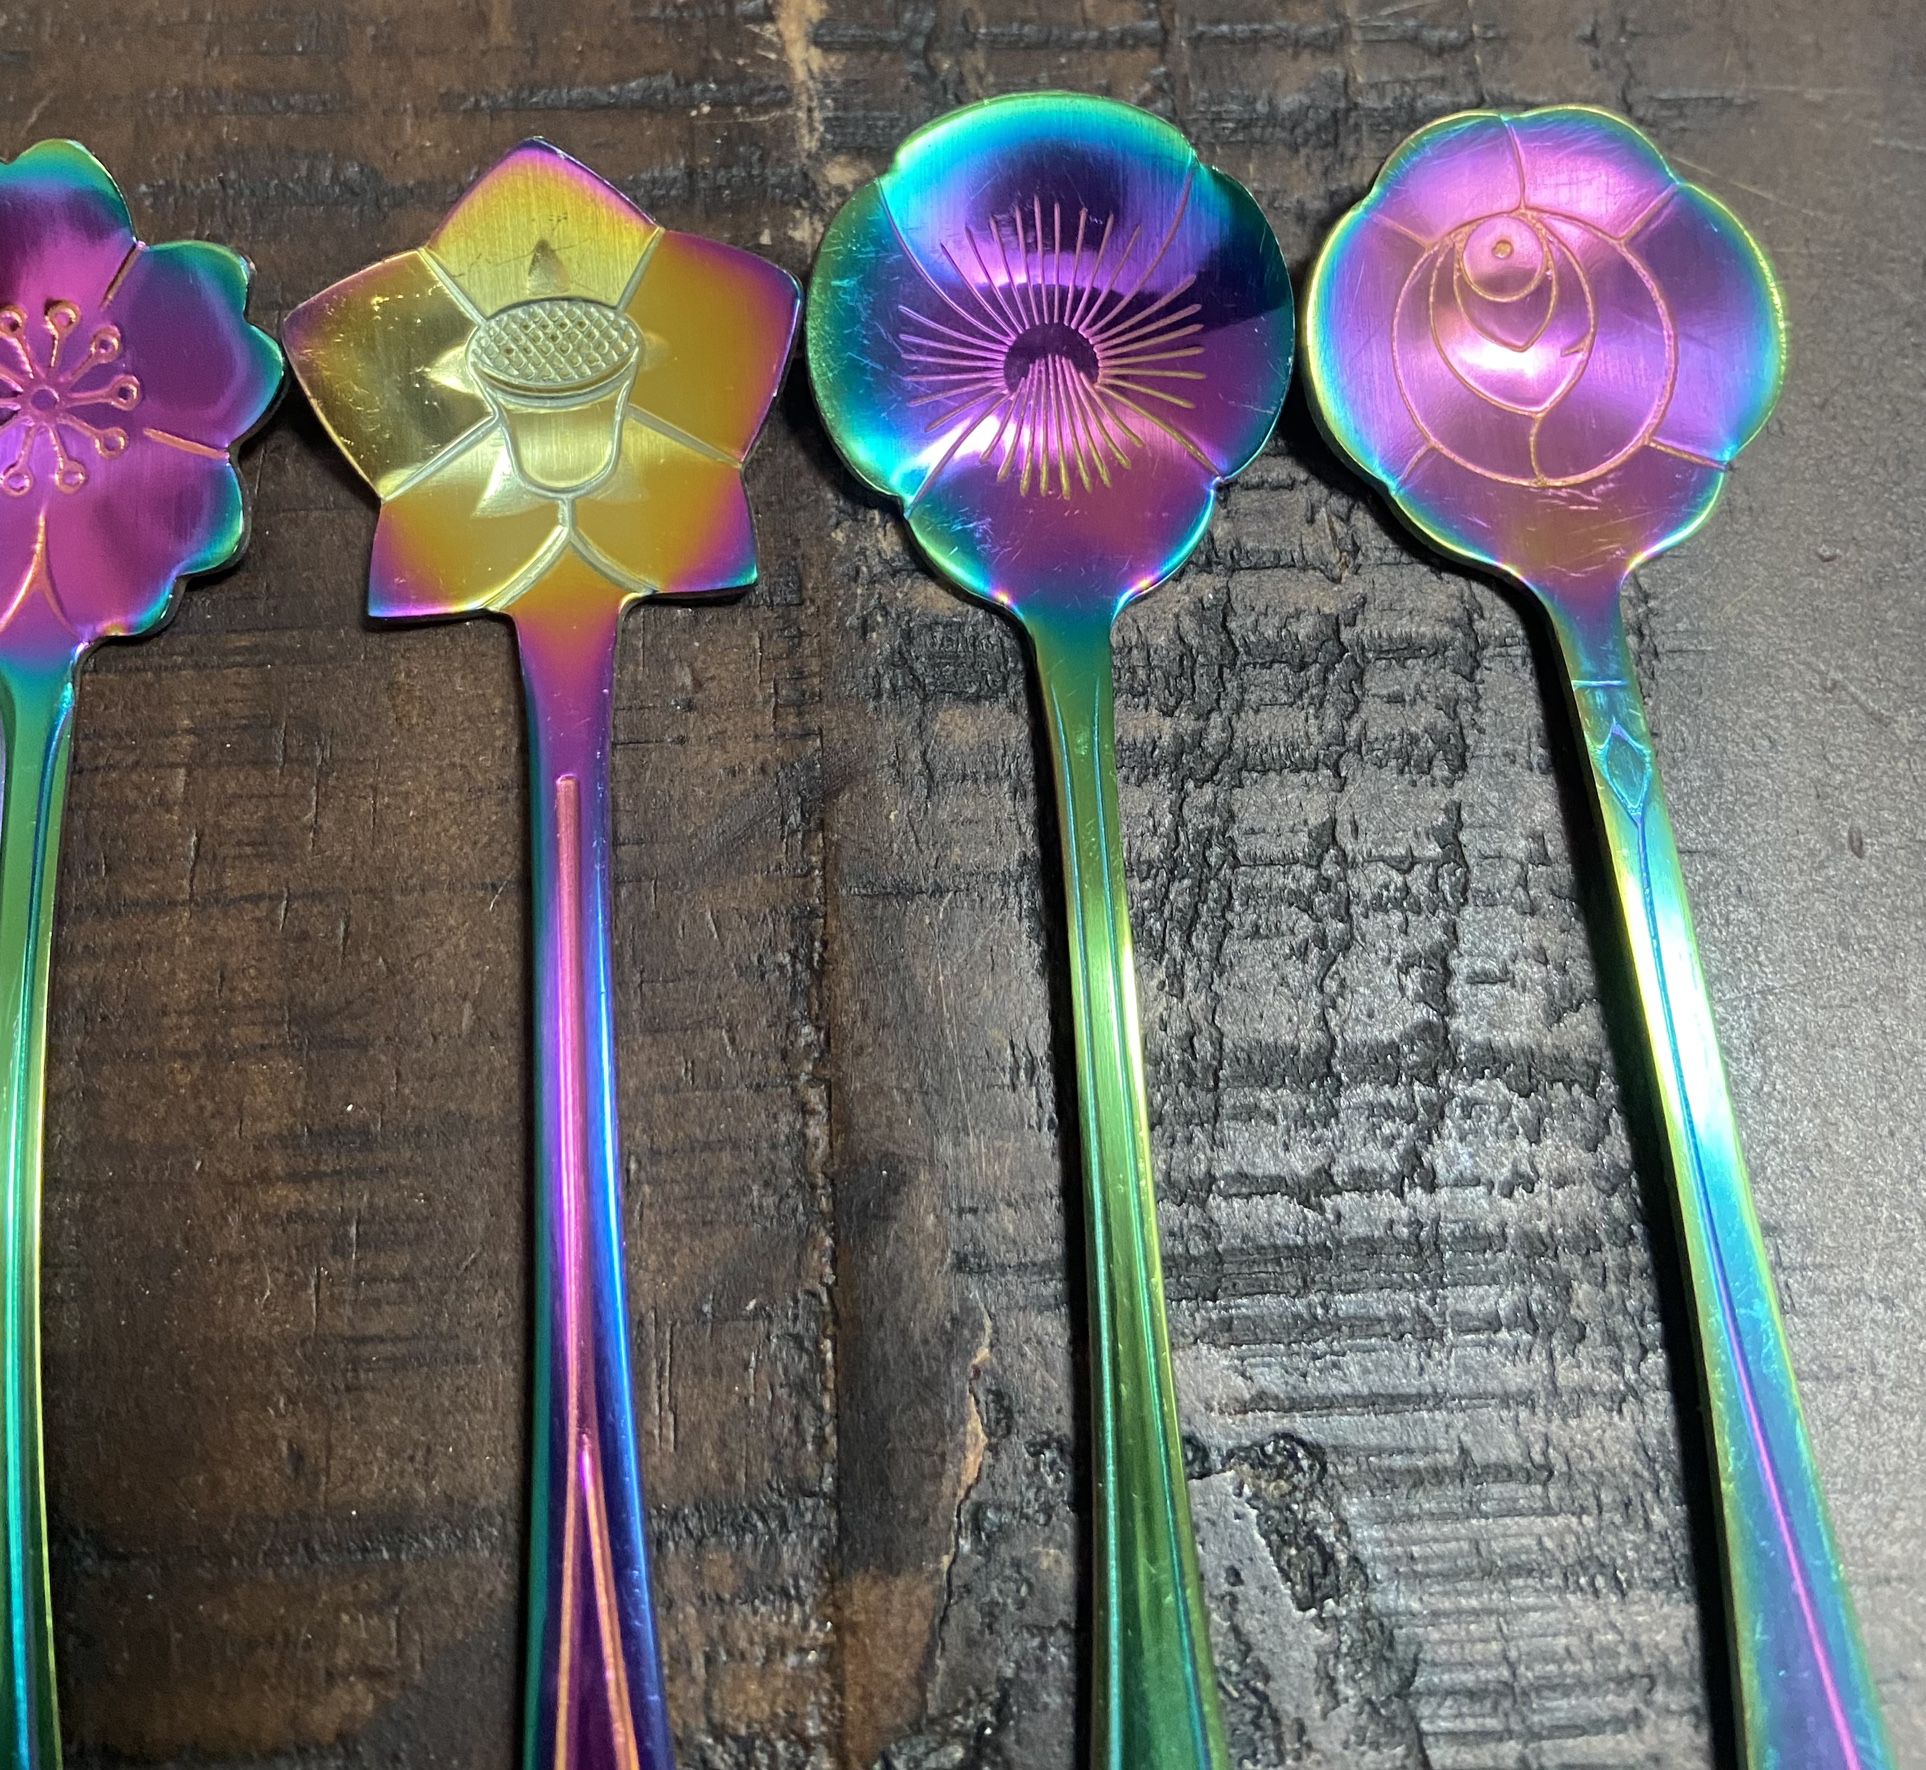 Souvenir Collectible Spoons $10 for all 